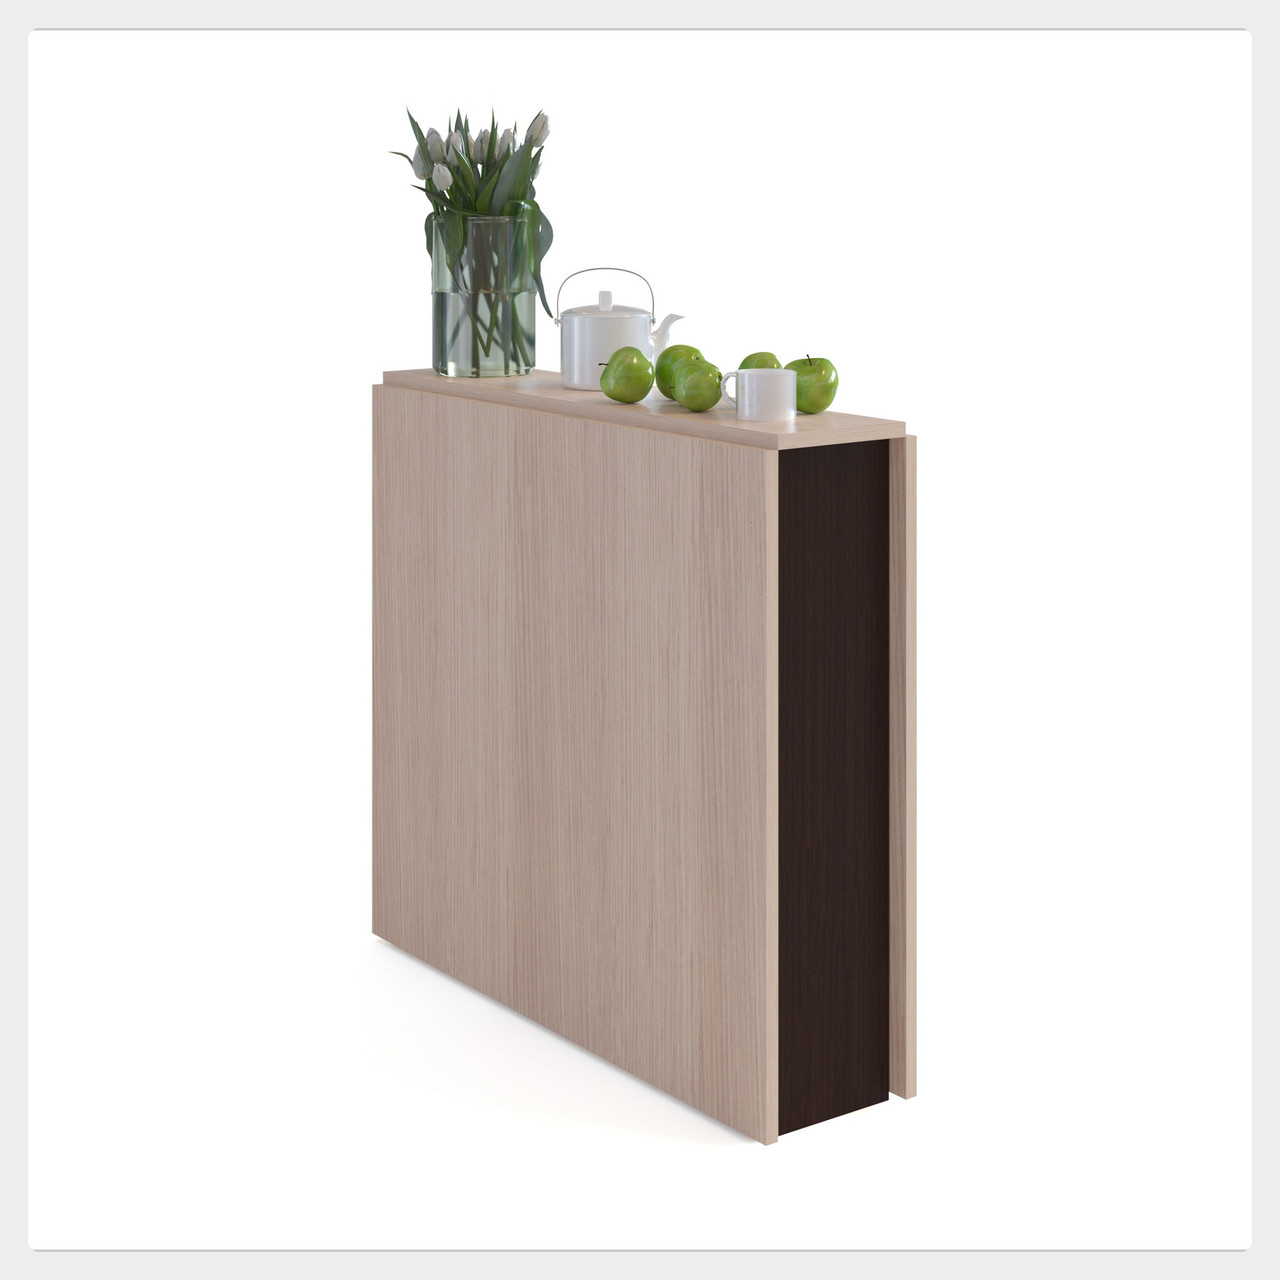 Стіл-книжка XBOOK-24 м.1 дерев'яний розкладний стіл-трансформер журнальний для вітальні або кухні